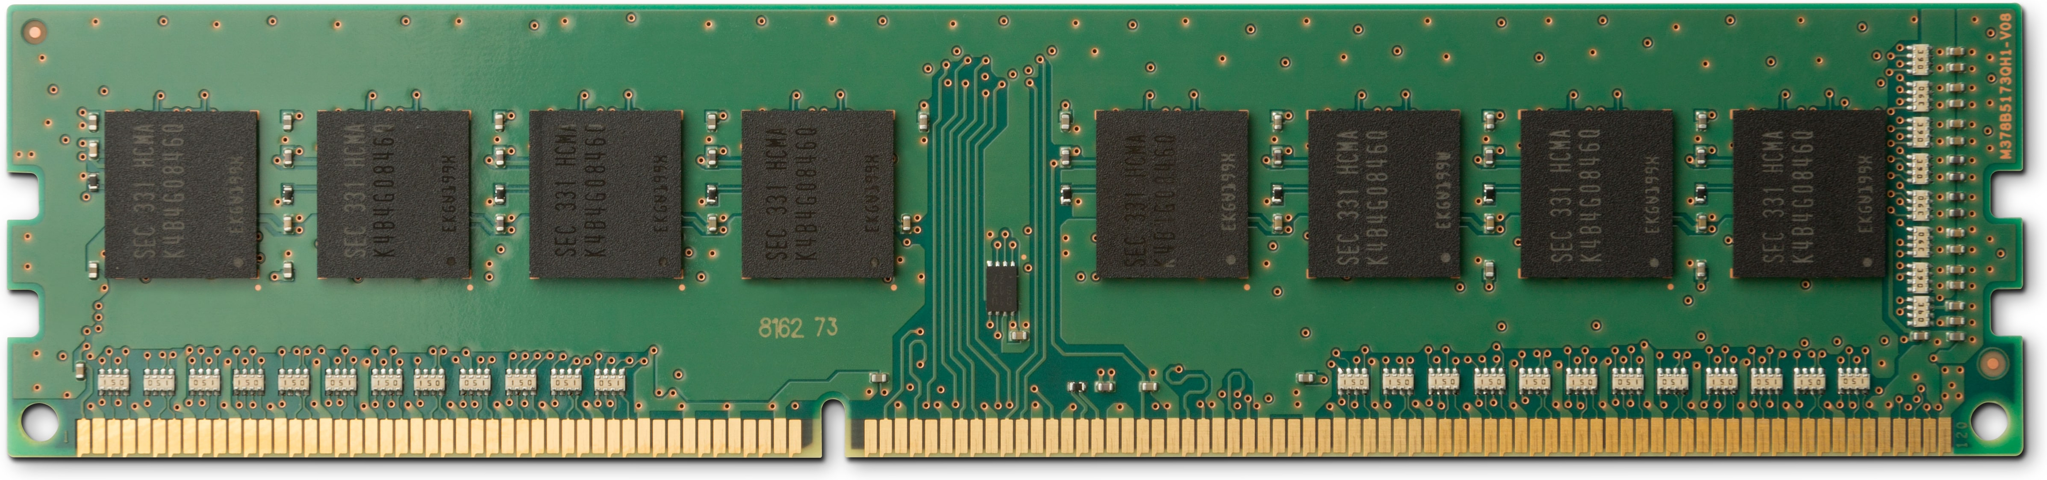 Bild von HP 13L72AA - 32 GB - 1 x 32 GB - DDR4 - 3200 MHz